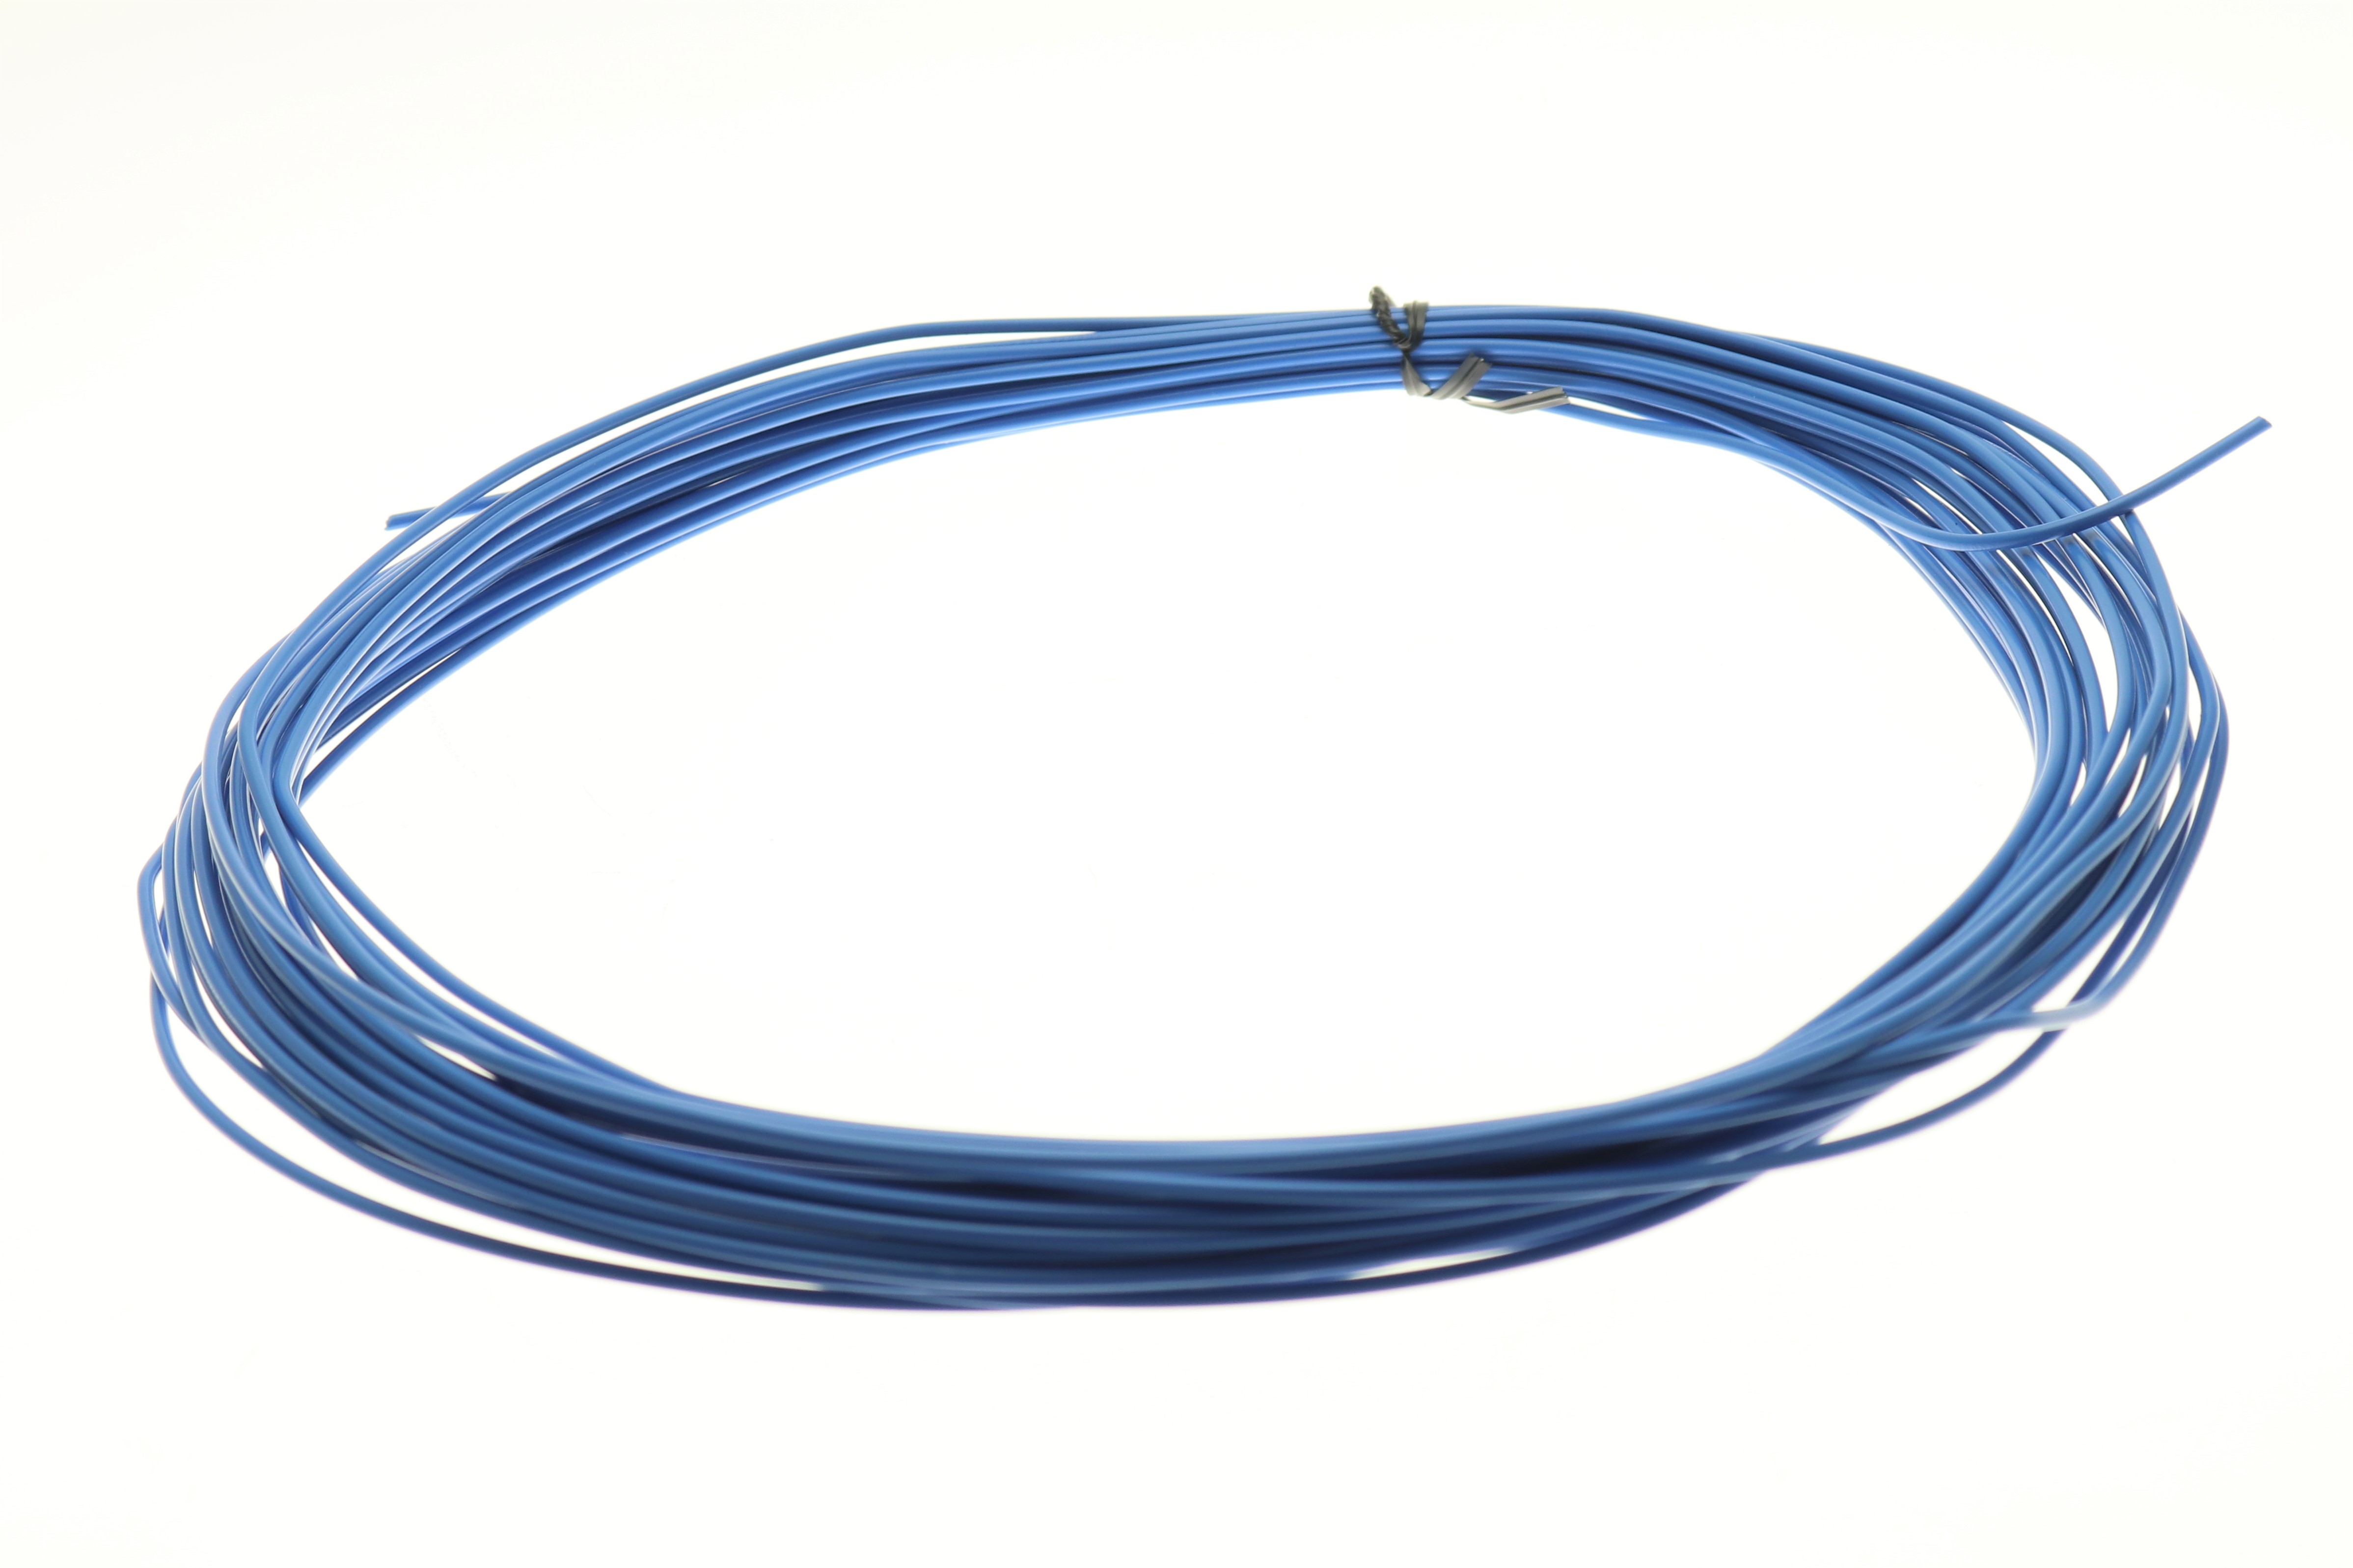 watt24 Litze H05V2-U 1x0,75mm² starr blue 15m Ring - 3439081